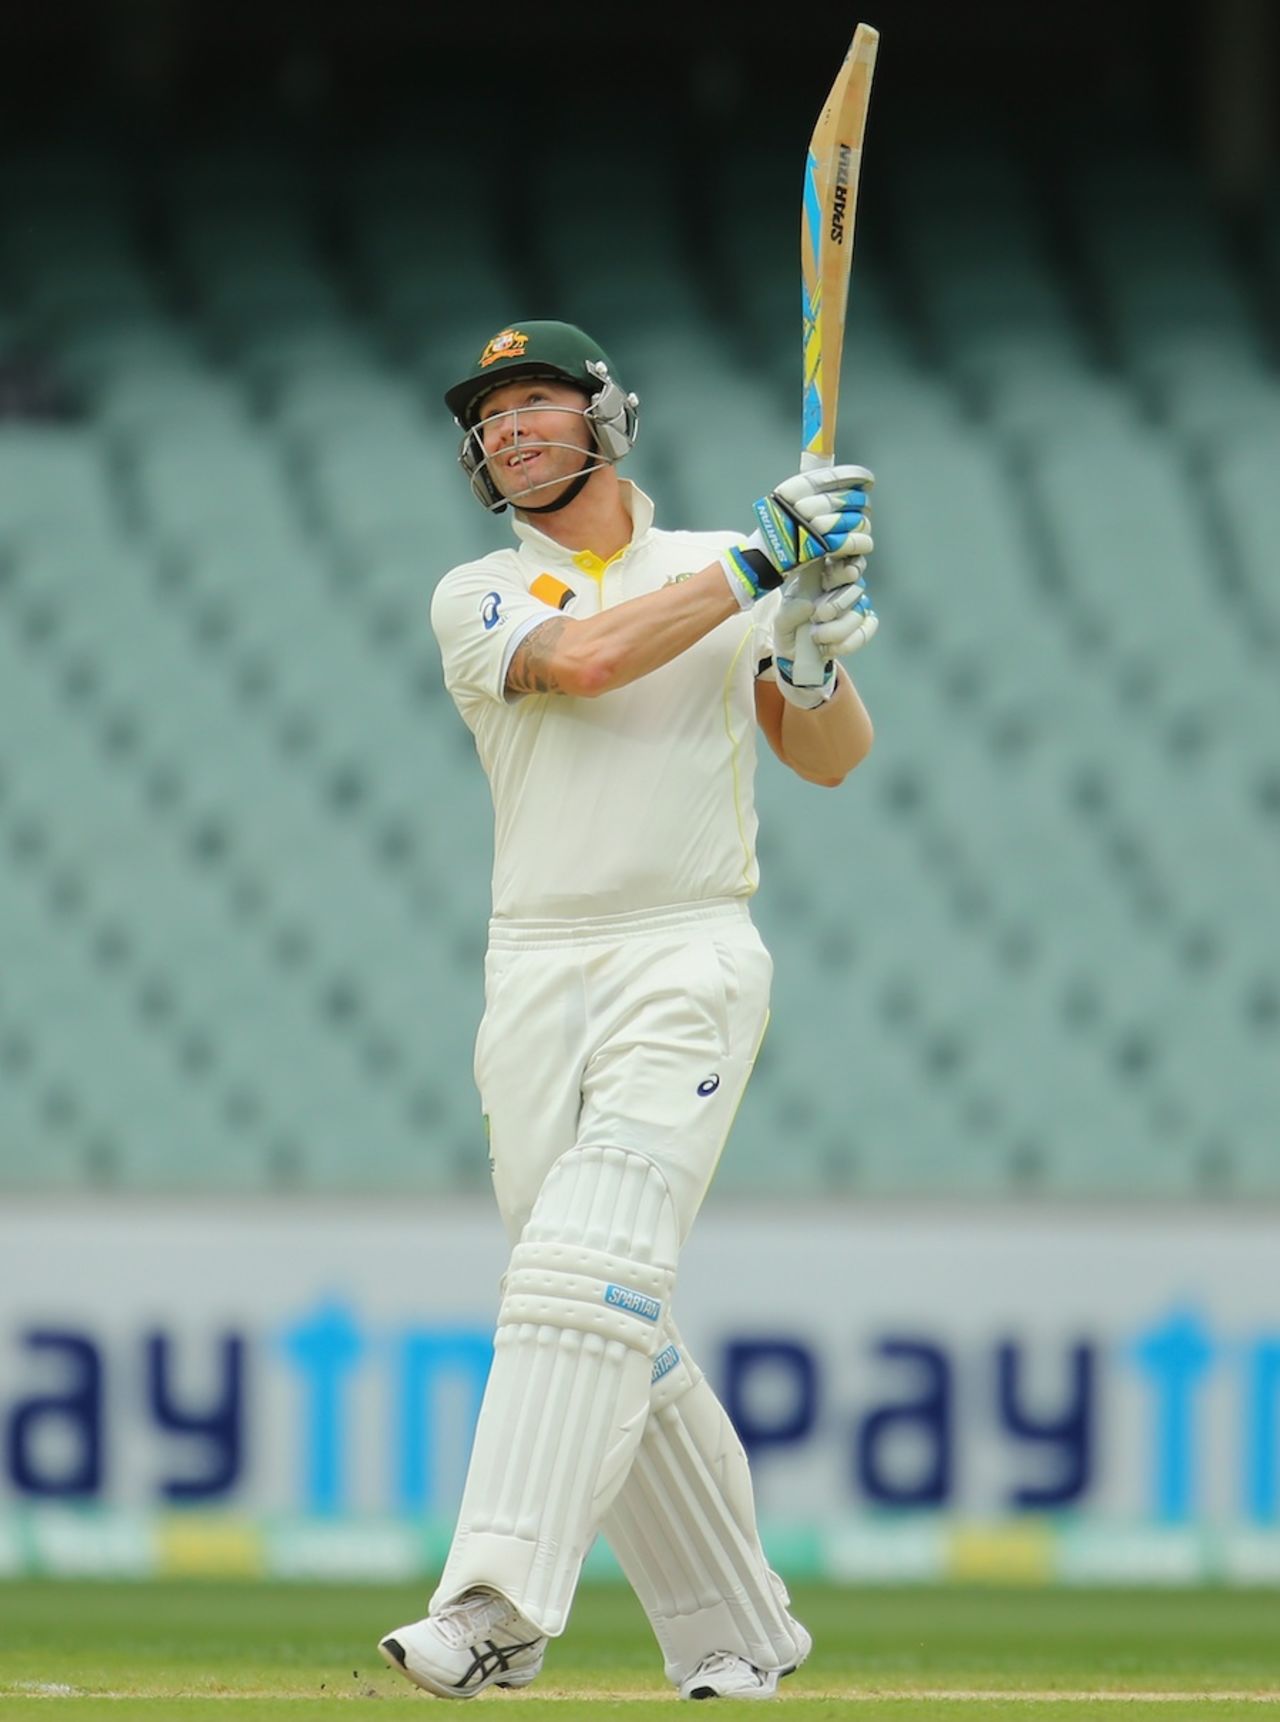 Michael Clarke pulls, Australia v India, 1st Test, Adelaide, 2nd day, December 10, 2014